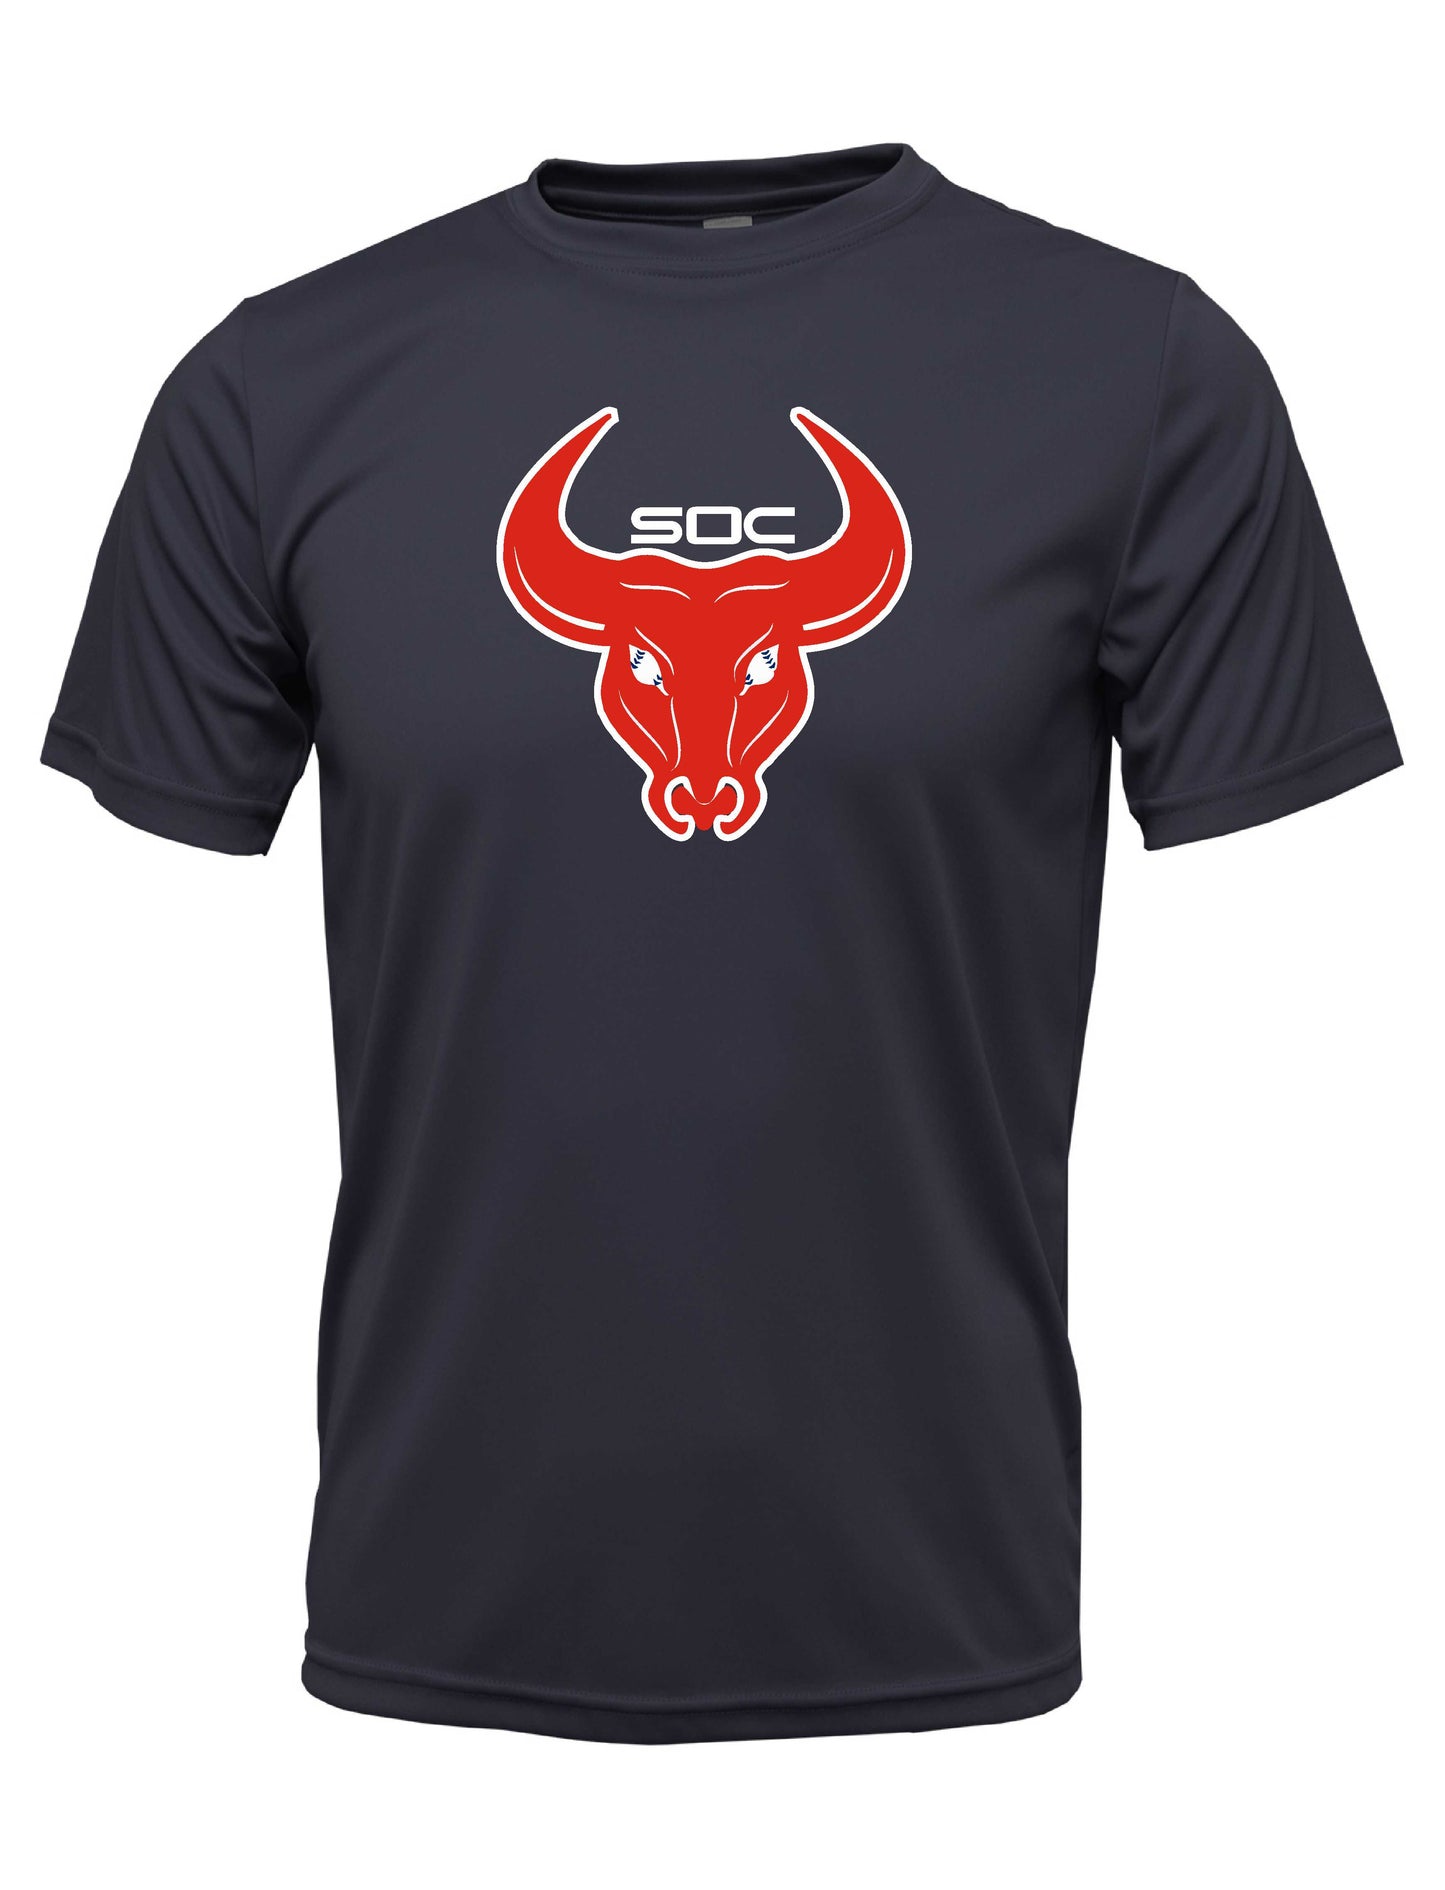 SC "Bull logo" Dri-fit T-shirt